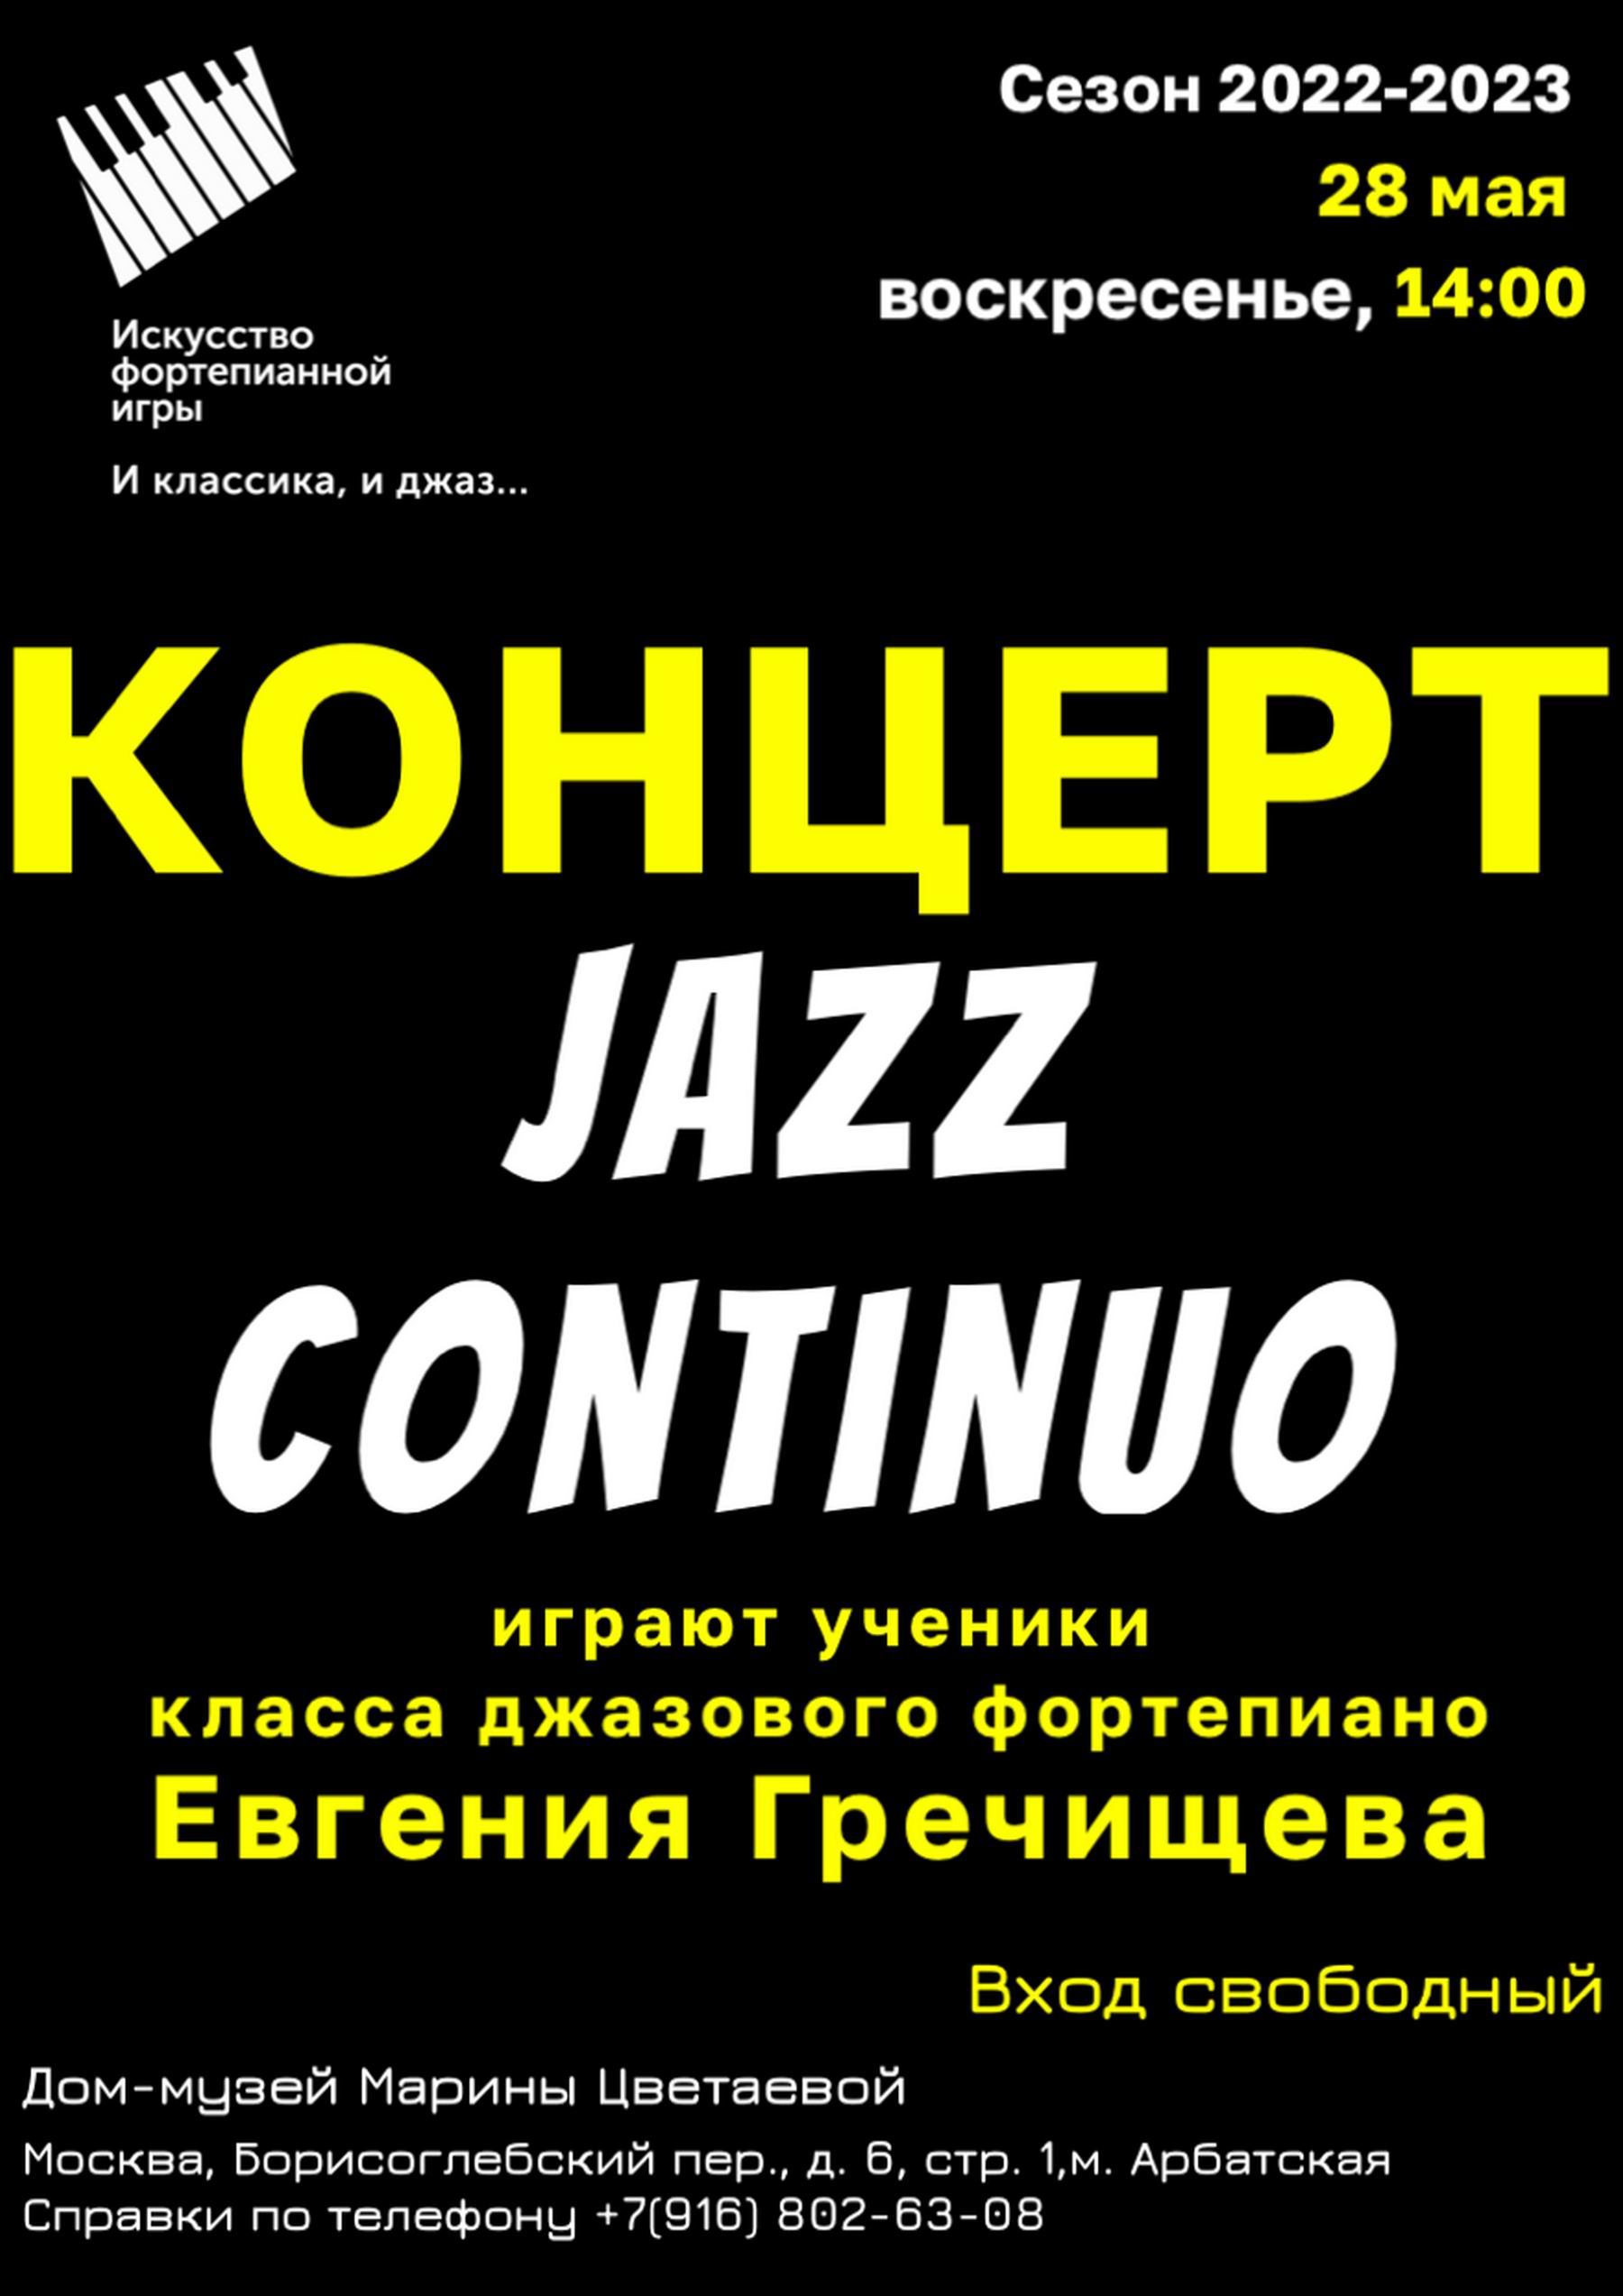 Иллюстрация: Концерт учеников класса джазового фортепиано Евгения Гречищева